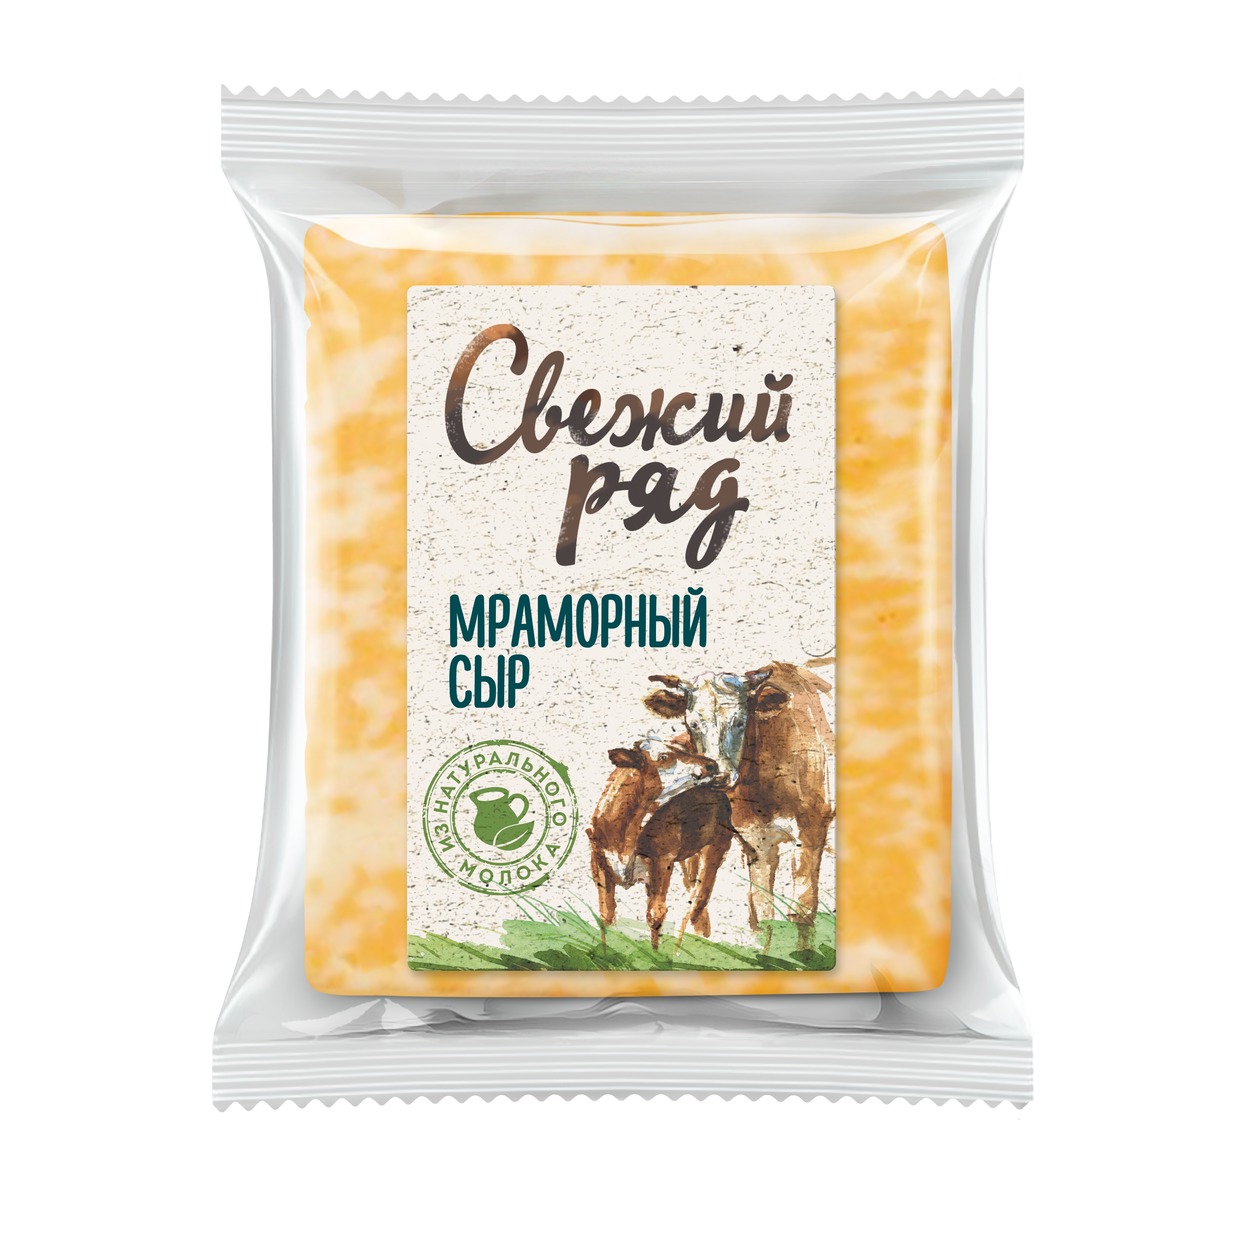 БЗМЖ Свежий ряд Сыр фасованный Мраморный мдж 45%1 кг